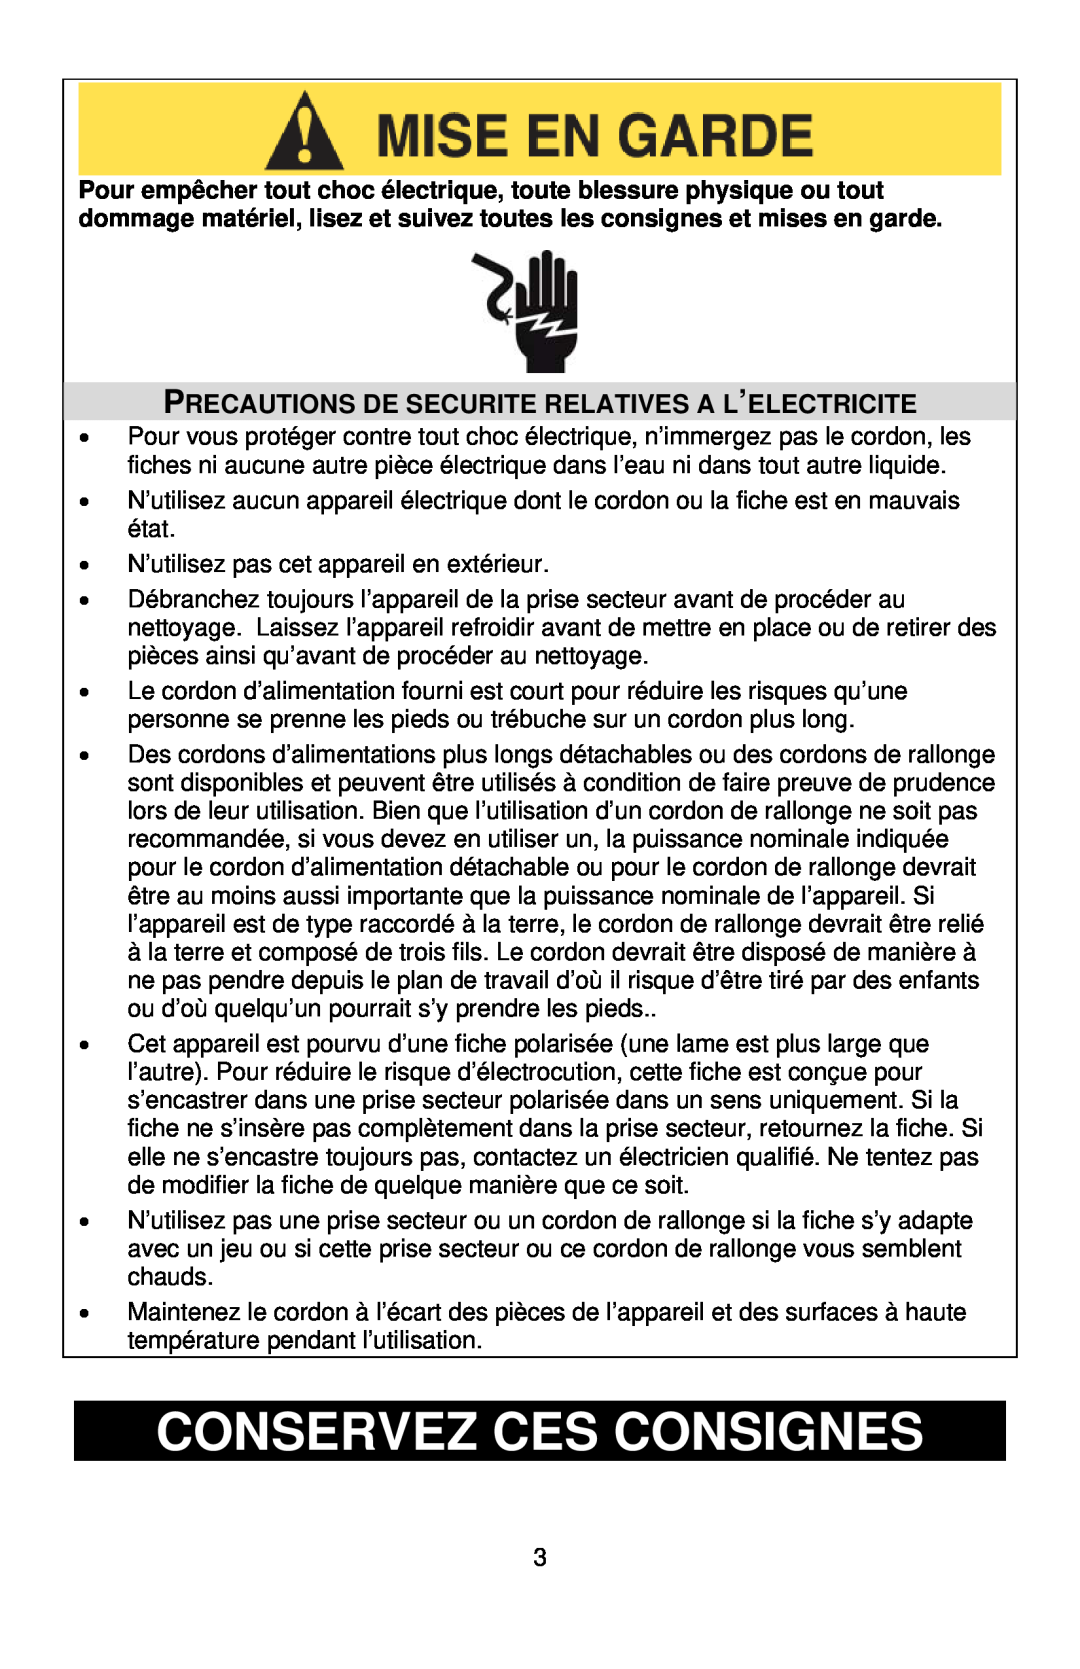 West Bend 86675 instruction manual Conservez Ces Consignes, Precautions De Securite Relatives A L’Electricite 